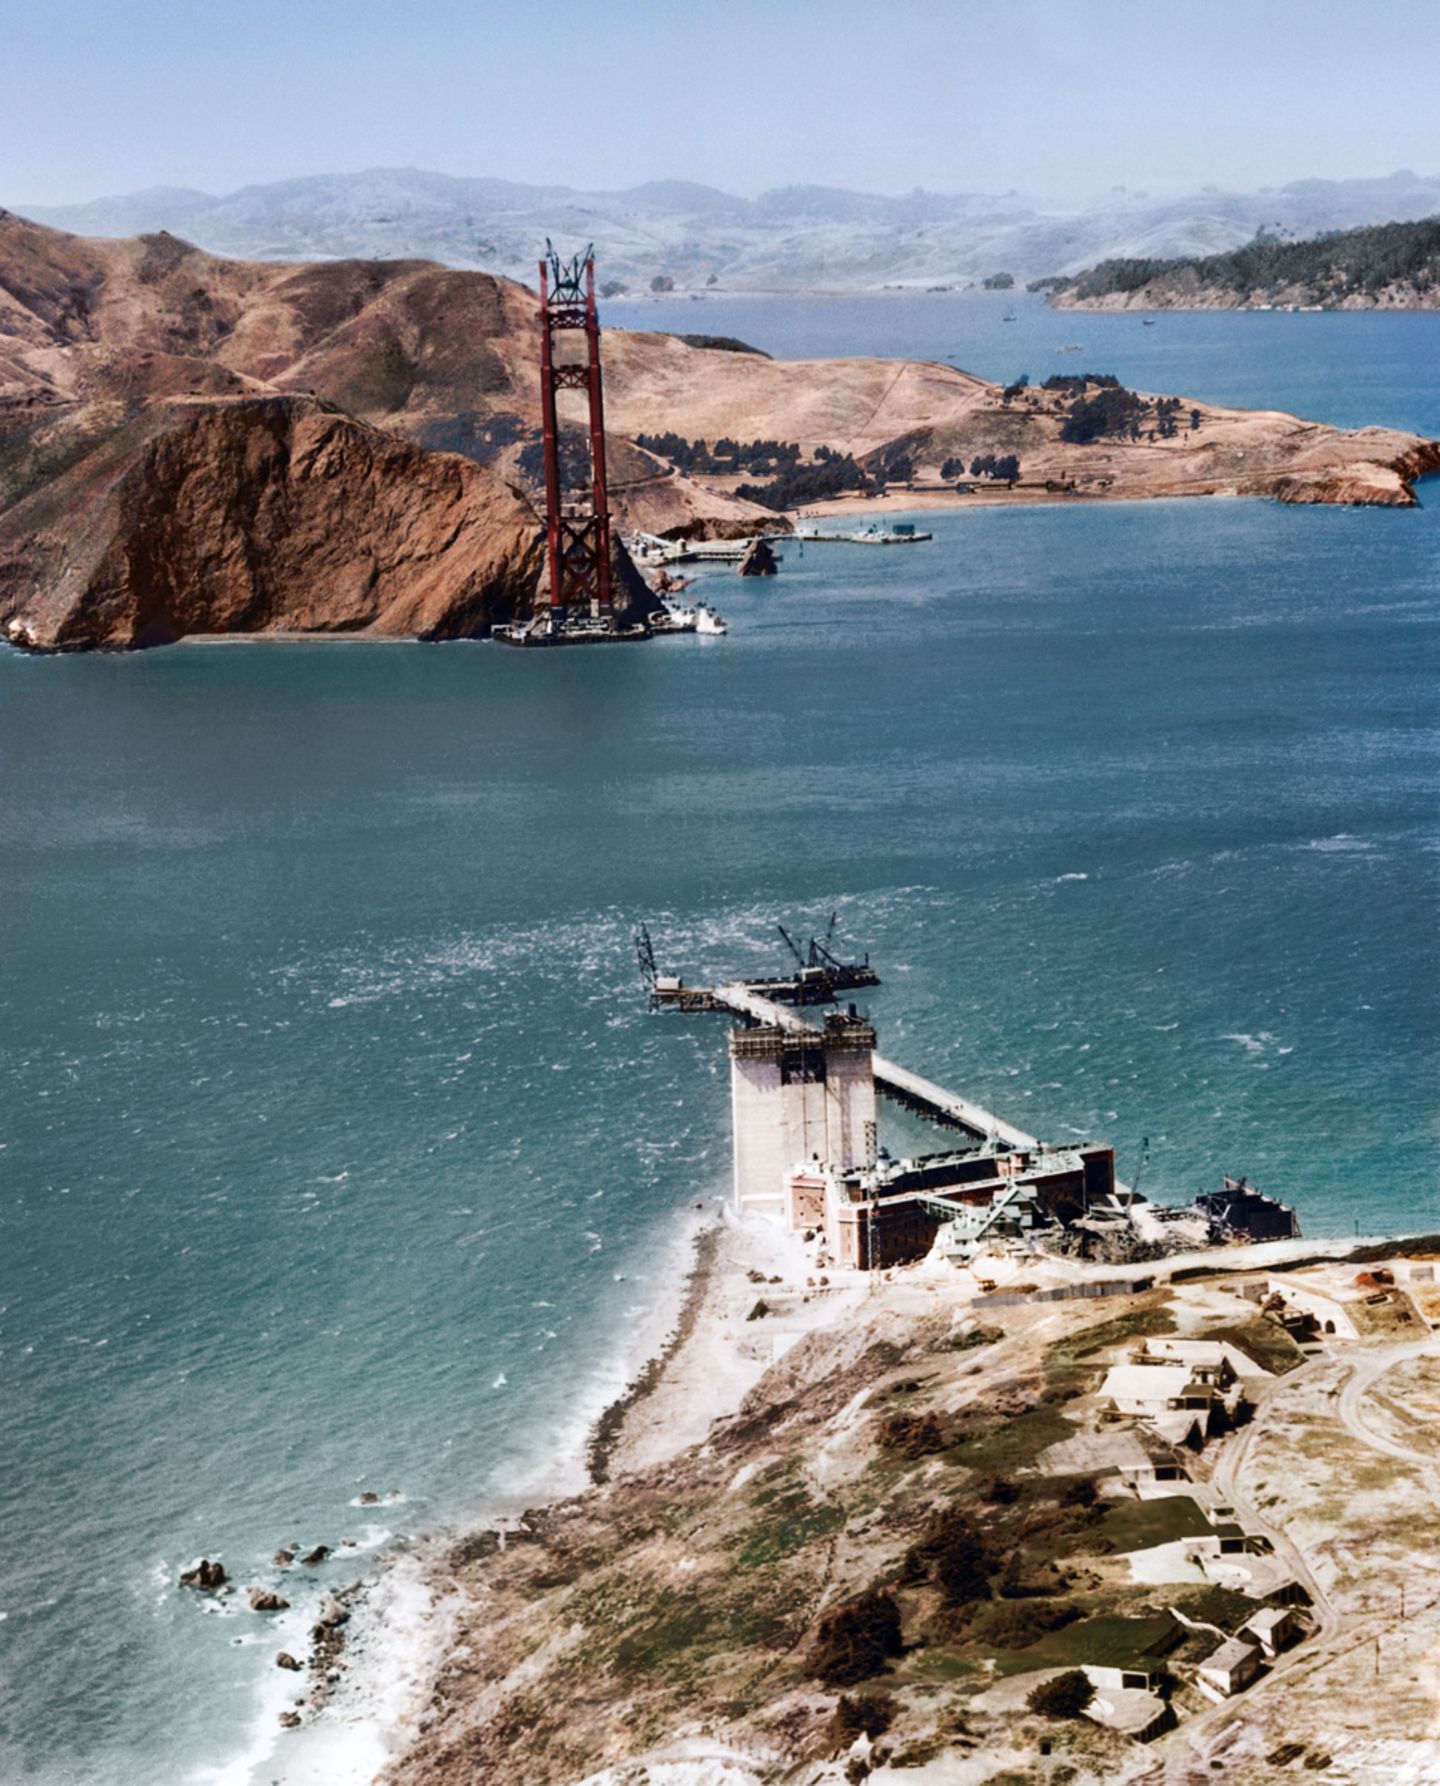 16. Juli 1934: während des Baus der Golden Gate Bridge